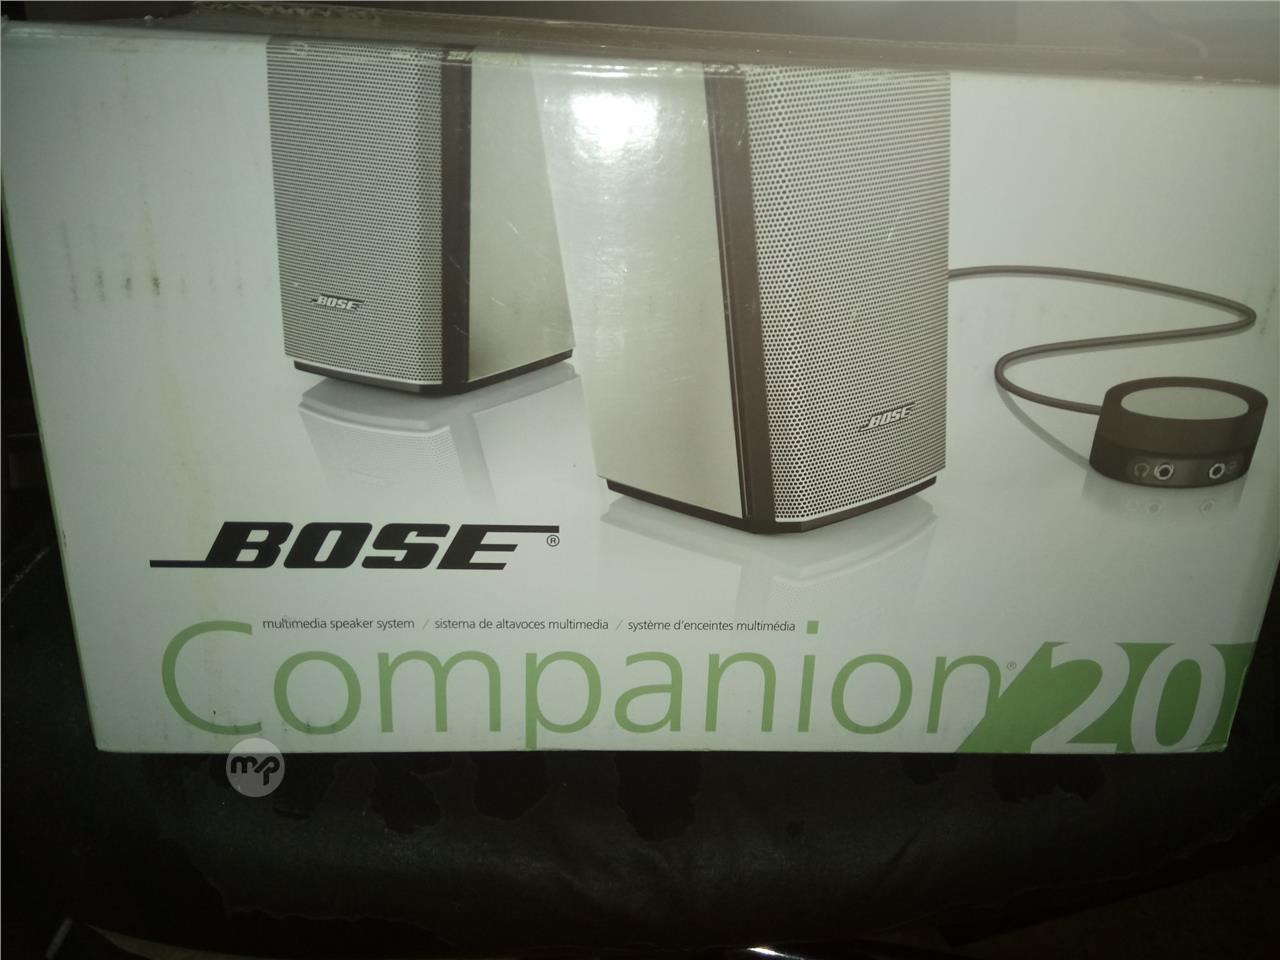 Bose Sistema de altavoces multimedia Companion 20